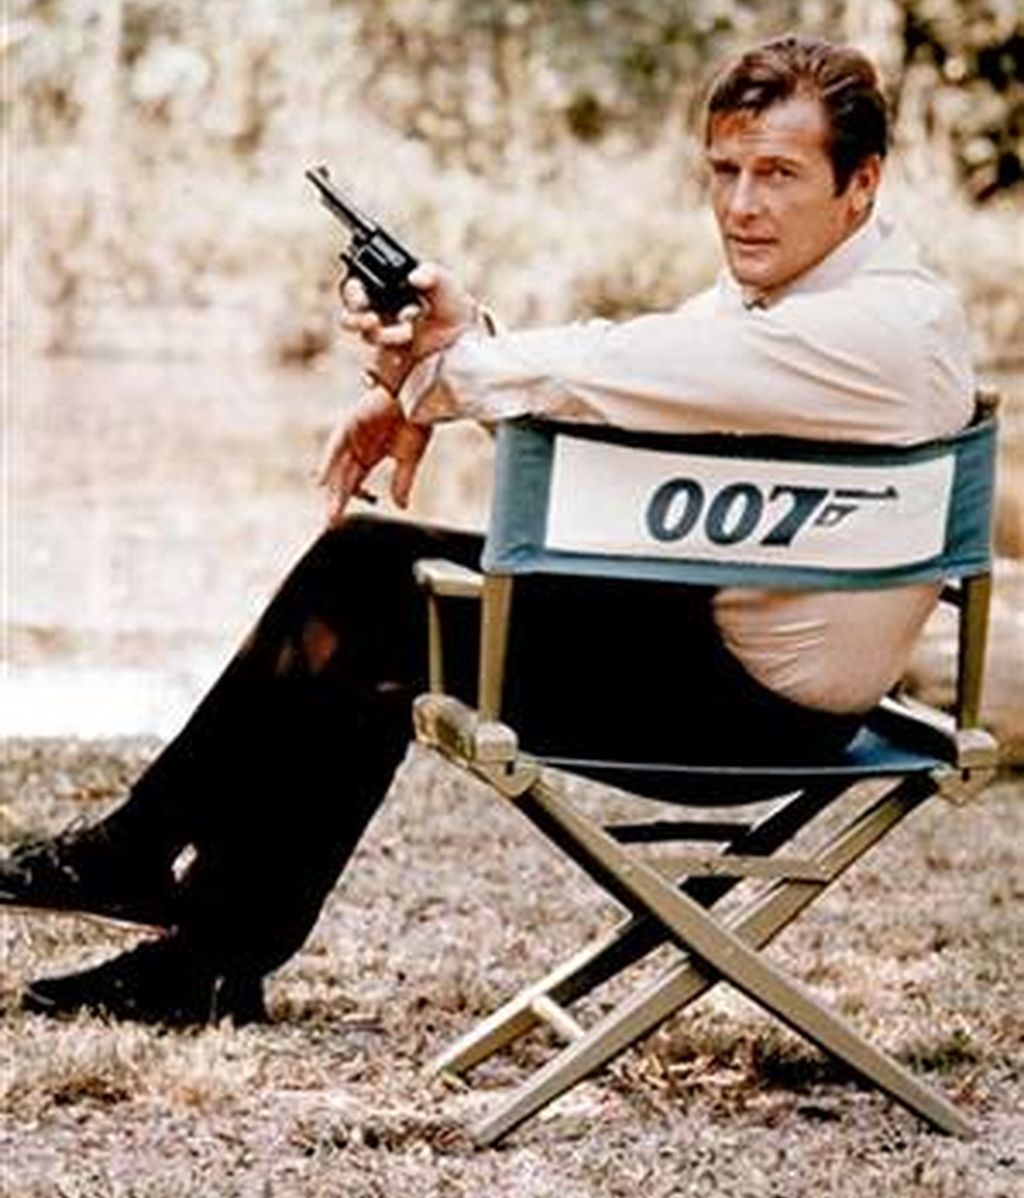 El agente 007 cumple 50 años